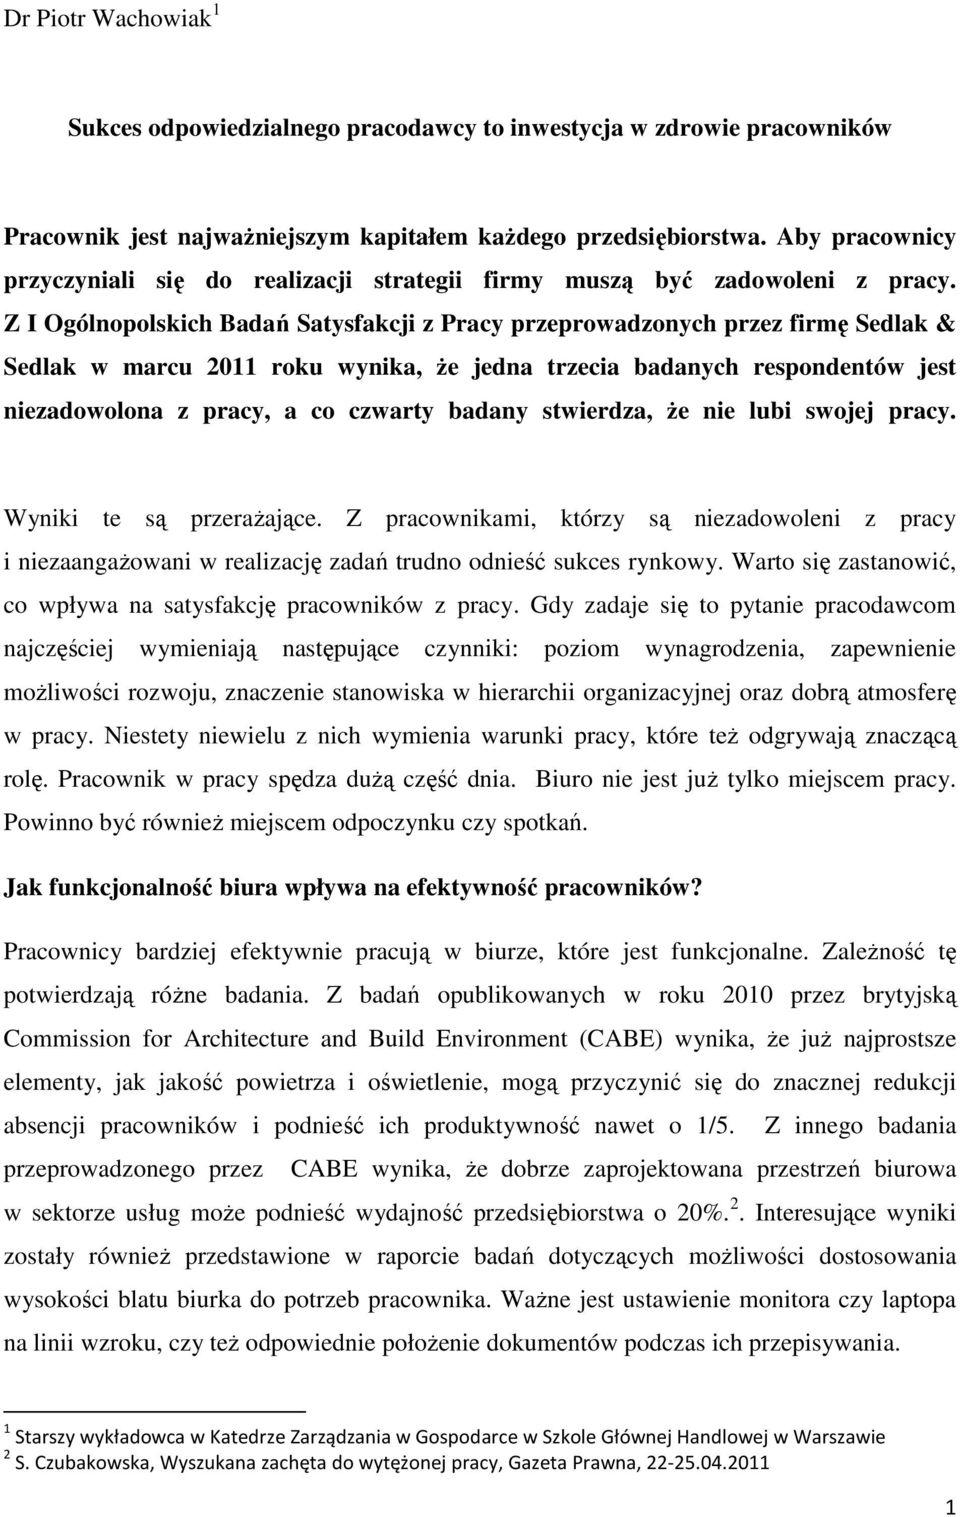 Z I Ogólnopolskich Badań Satysfakcji z Pracy przeprowadzonych przez firmę Sedlak & Sedlak w marcu 2011 roku wynika, że jedna trzecia badanych respondentów jest niezadowolona z pracy, a co czwarty